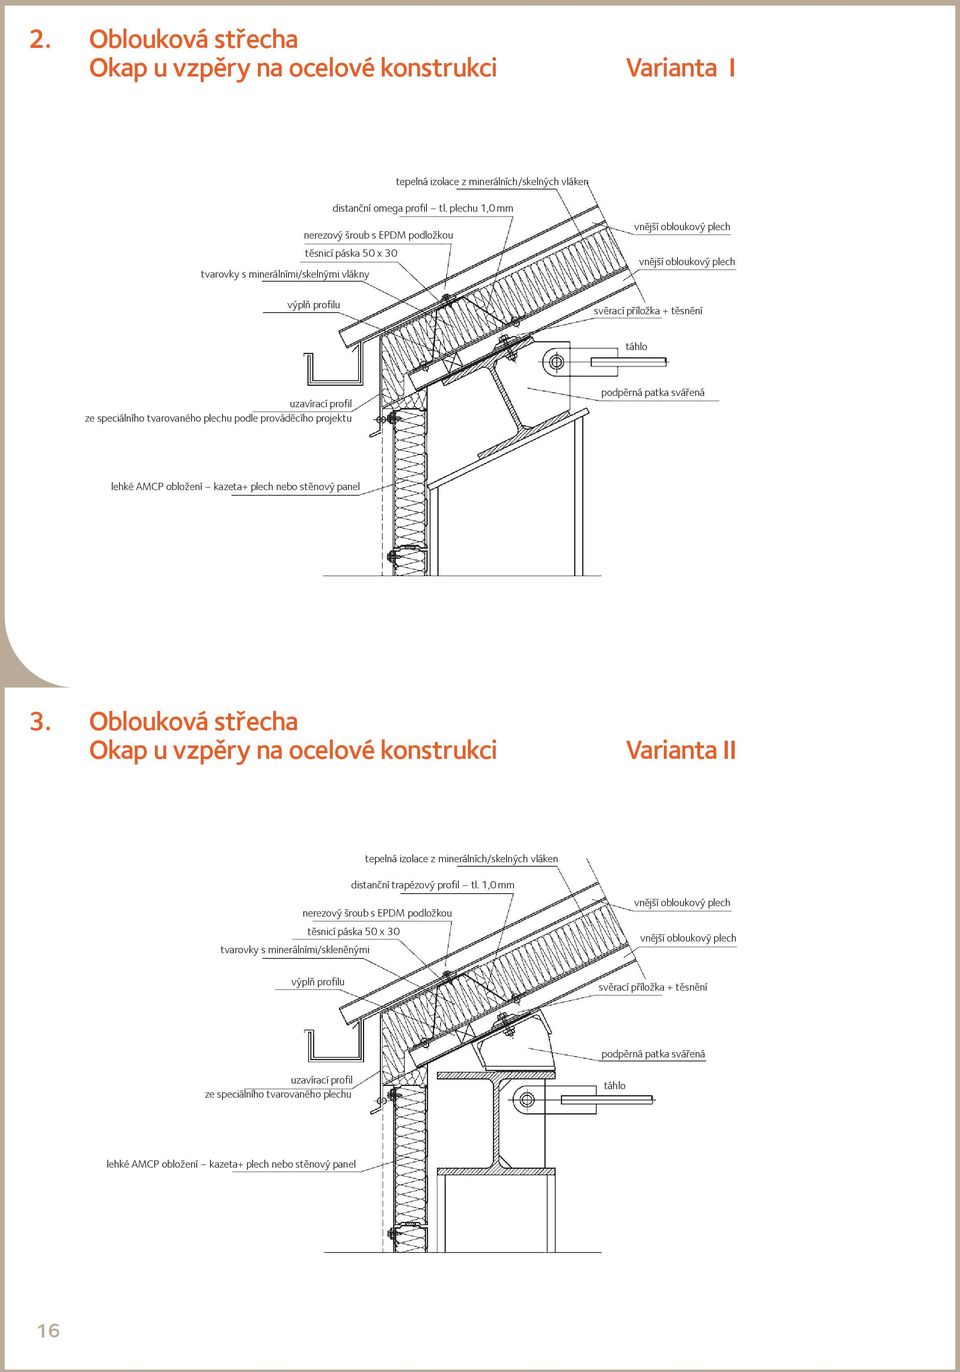 uzavírací profil ze speciálního tvarovaného plechu podle prováděcího projektu podpěrná patka svářená lehké AMCP obložení kazeta+ plech nebo stěnový panel 3.